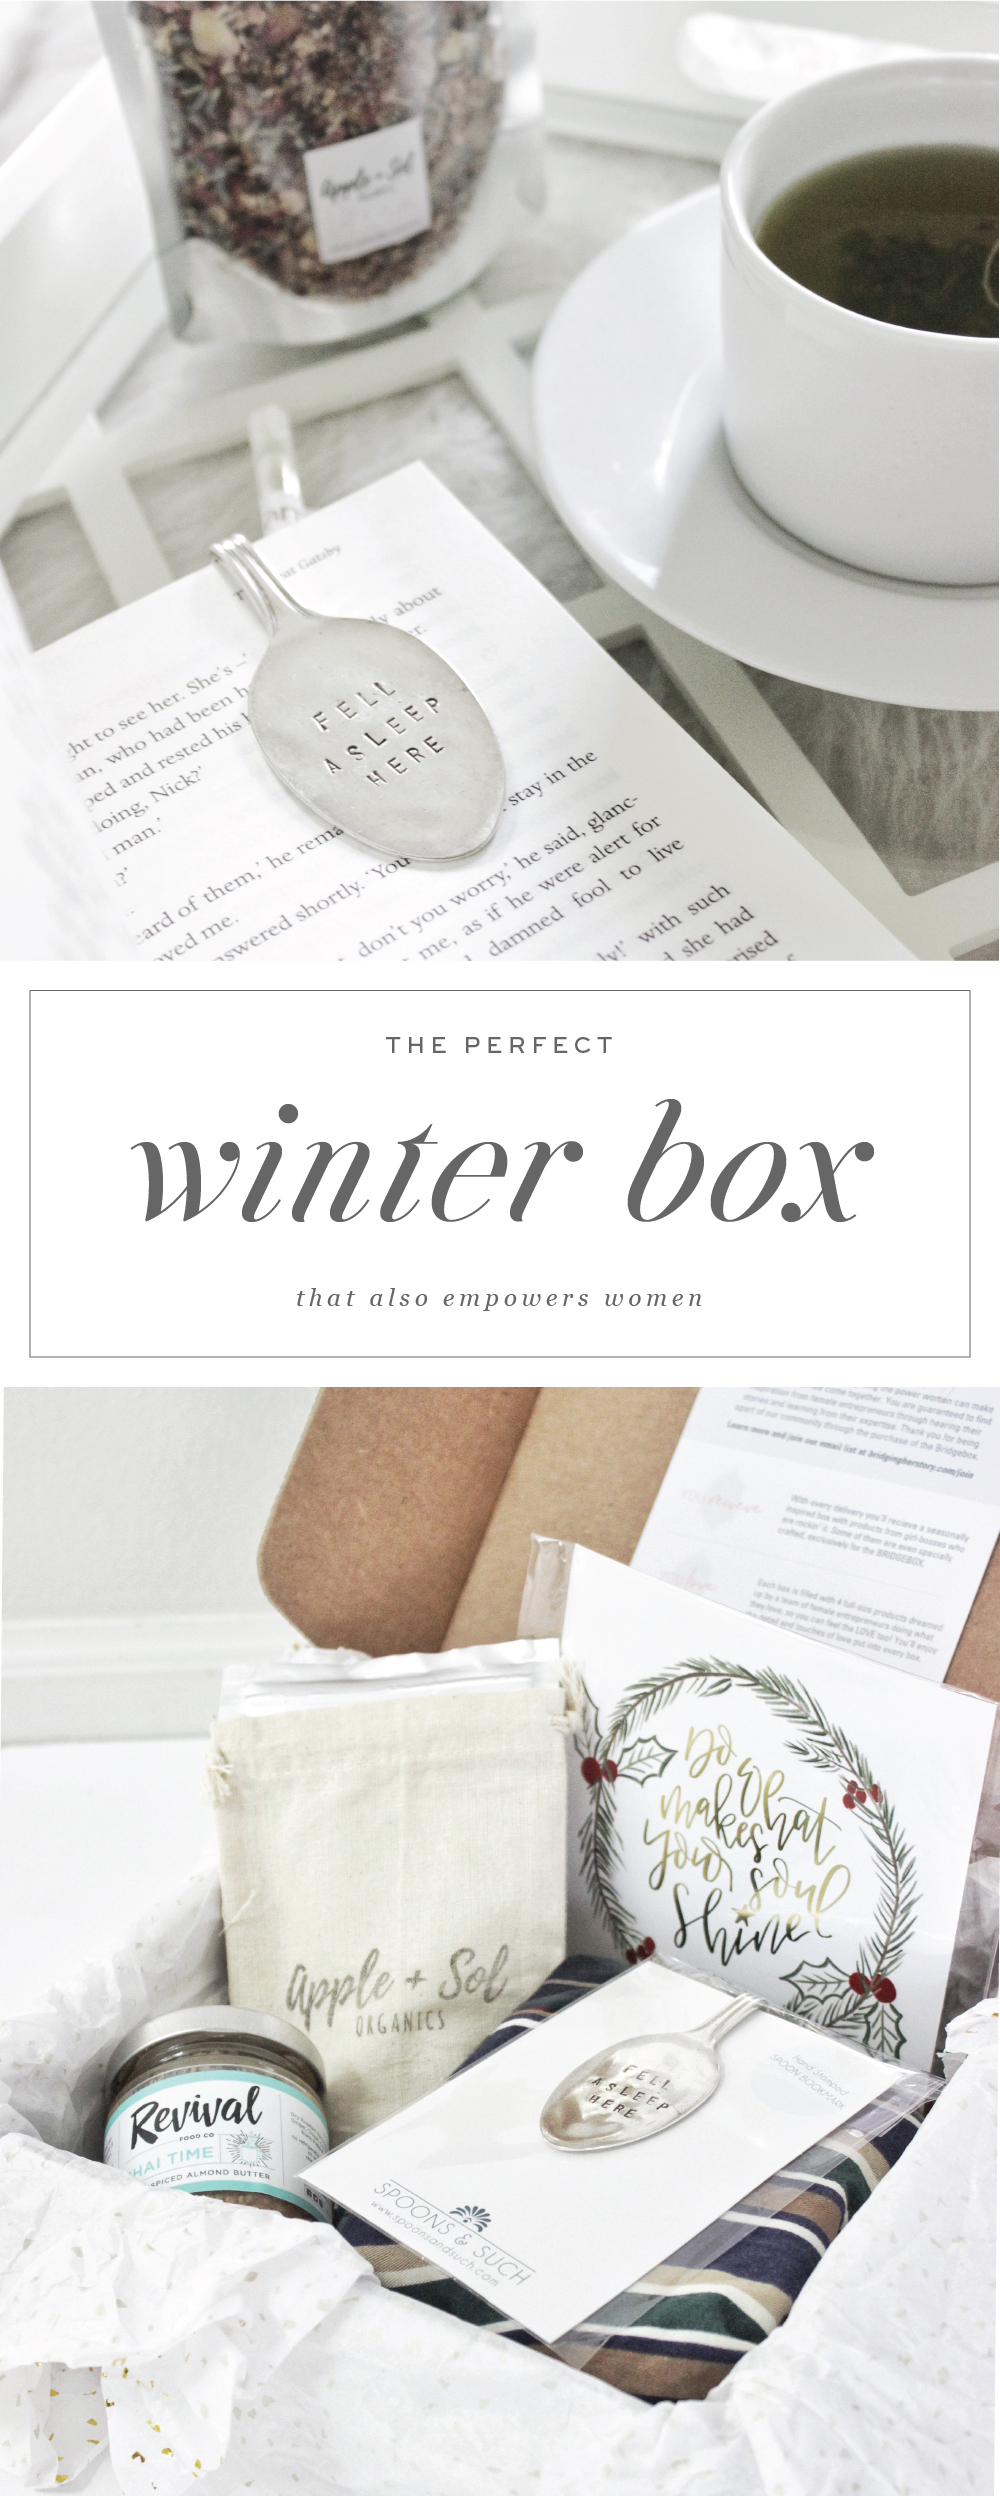 The perfect winter box that empowers women :: Saffron Avenue